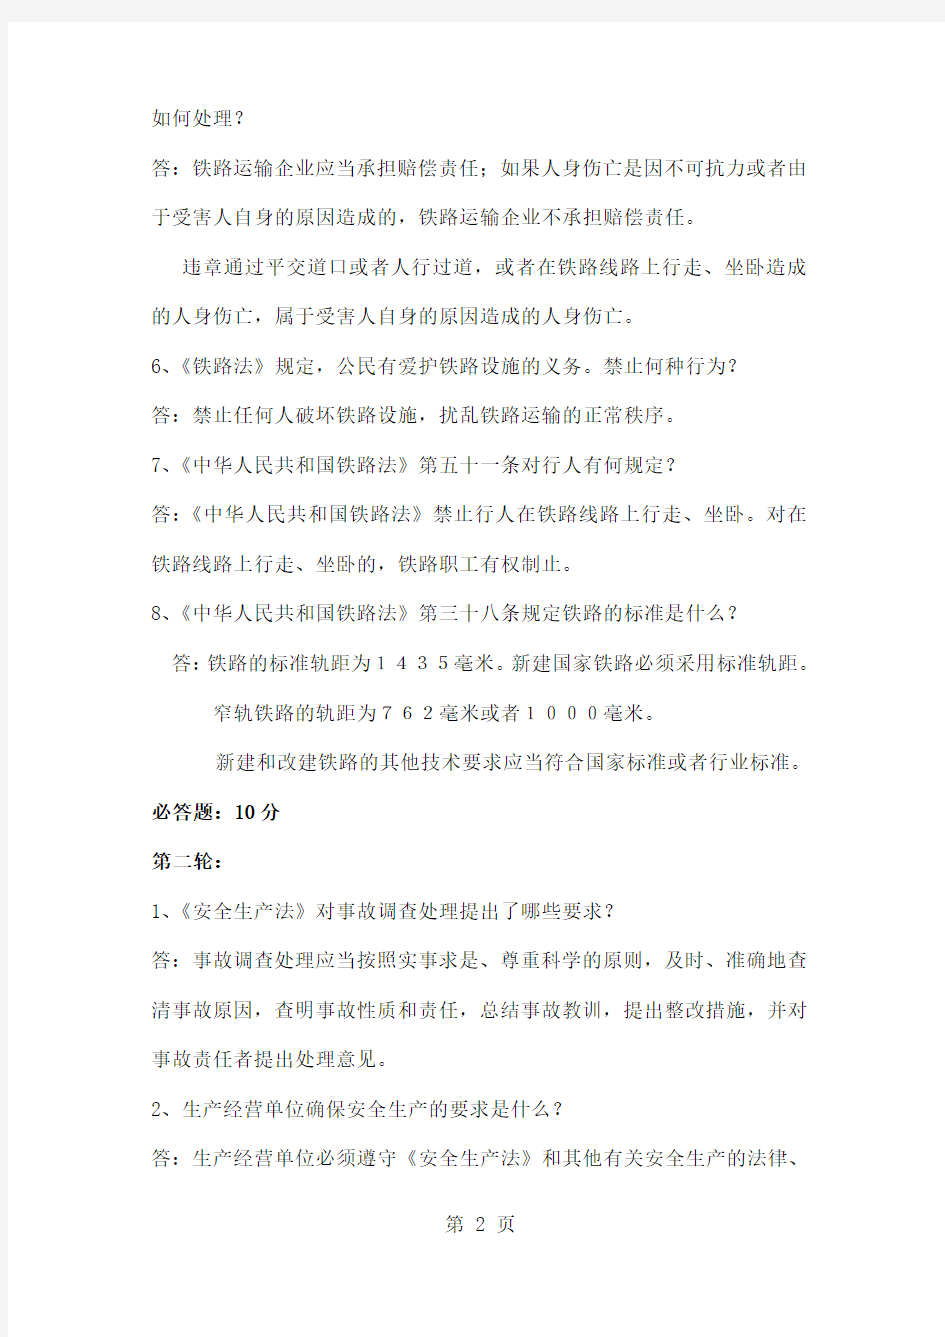 2019年潞安集团铁路运营公司安全知识竞赛题共27页